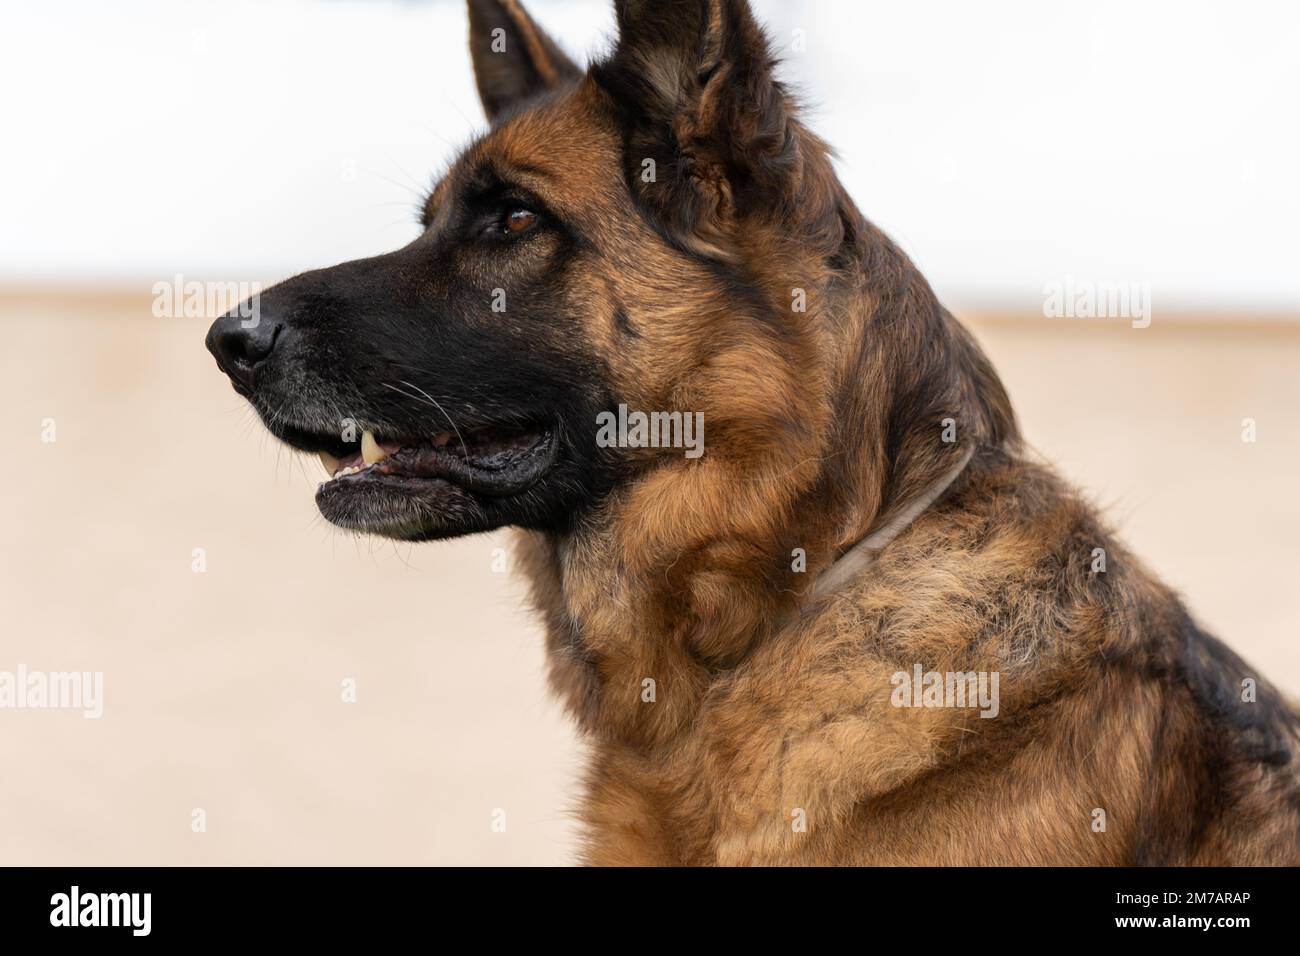 Gehorsamer brauner Schäferhund mit offenem Mund, der wegblickt, während er  auf verschwommenem Hintergrund sitzt Stockfotografie - Alamy